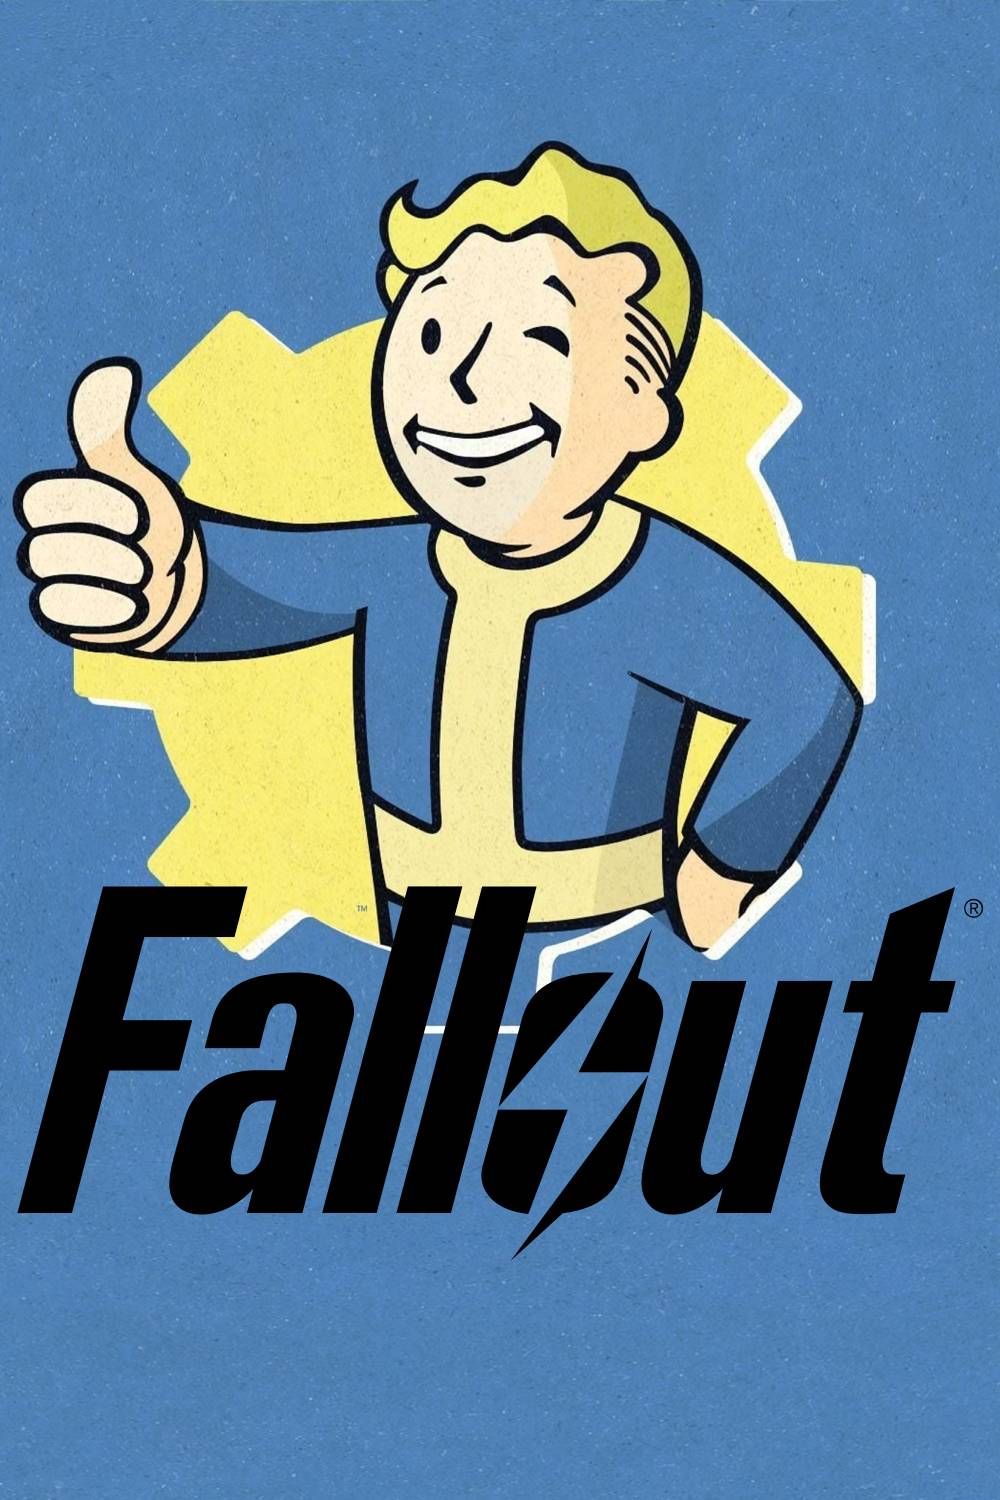 Arte da capa da página da tag da franquia Fallout